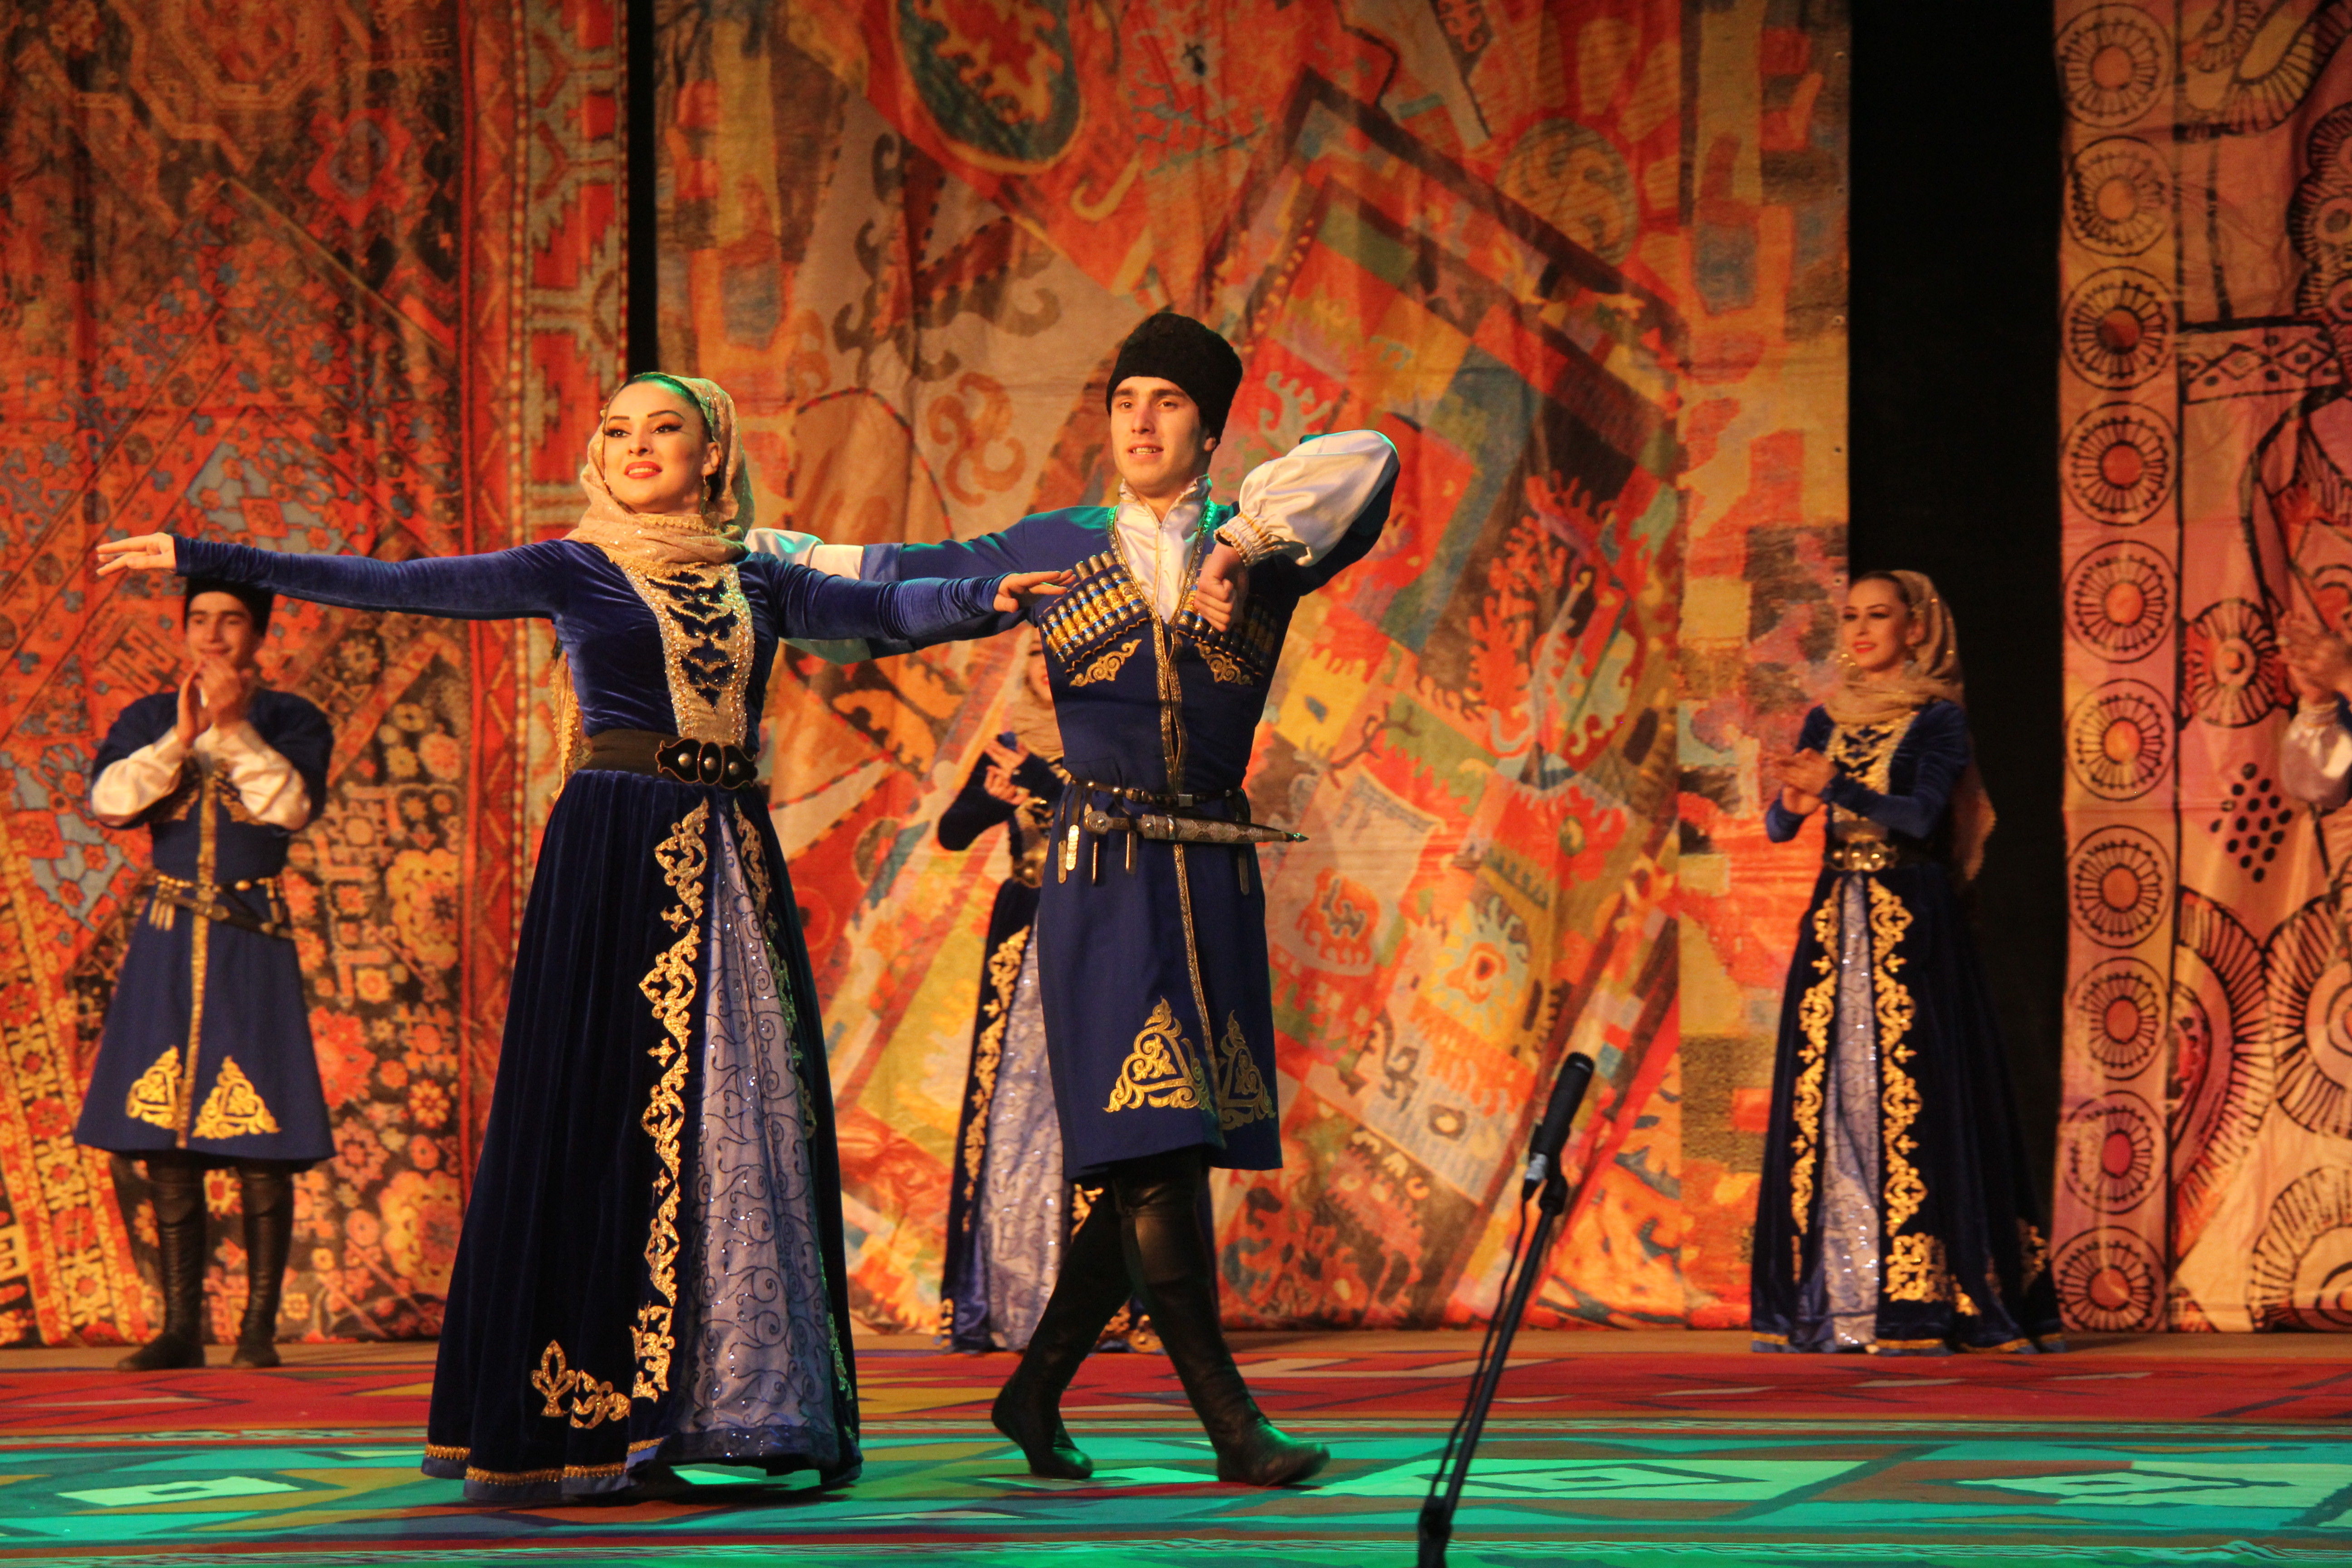 Кумык проживает. Национальная одежда народов Дагестана кумыки. Национальная одежда Кумыков. Терские кумыки. Кумыкский национальный костюм кумыки.